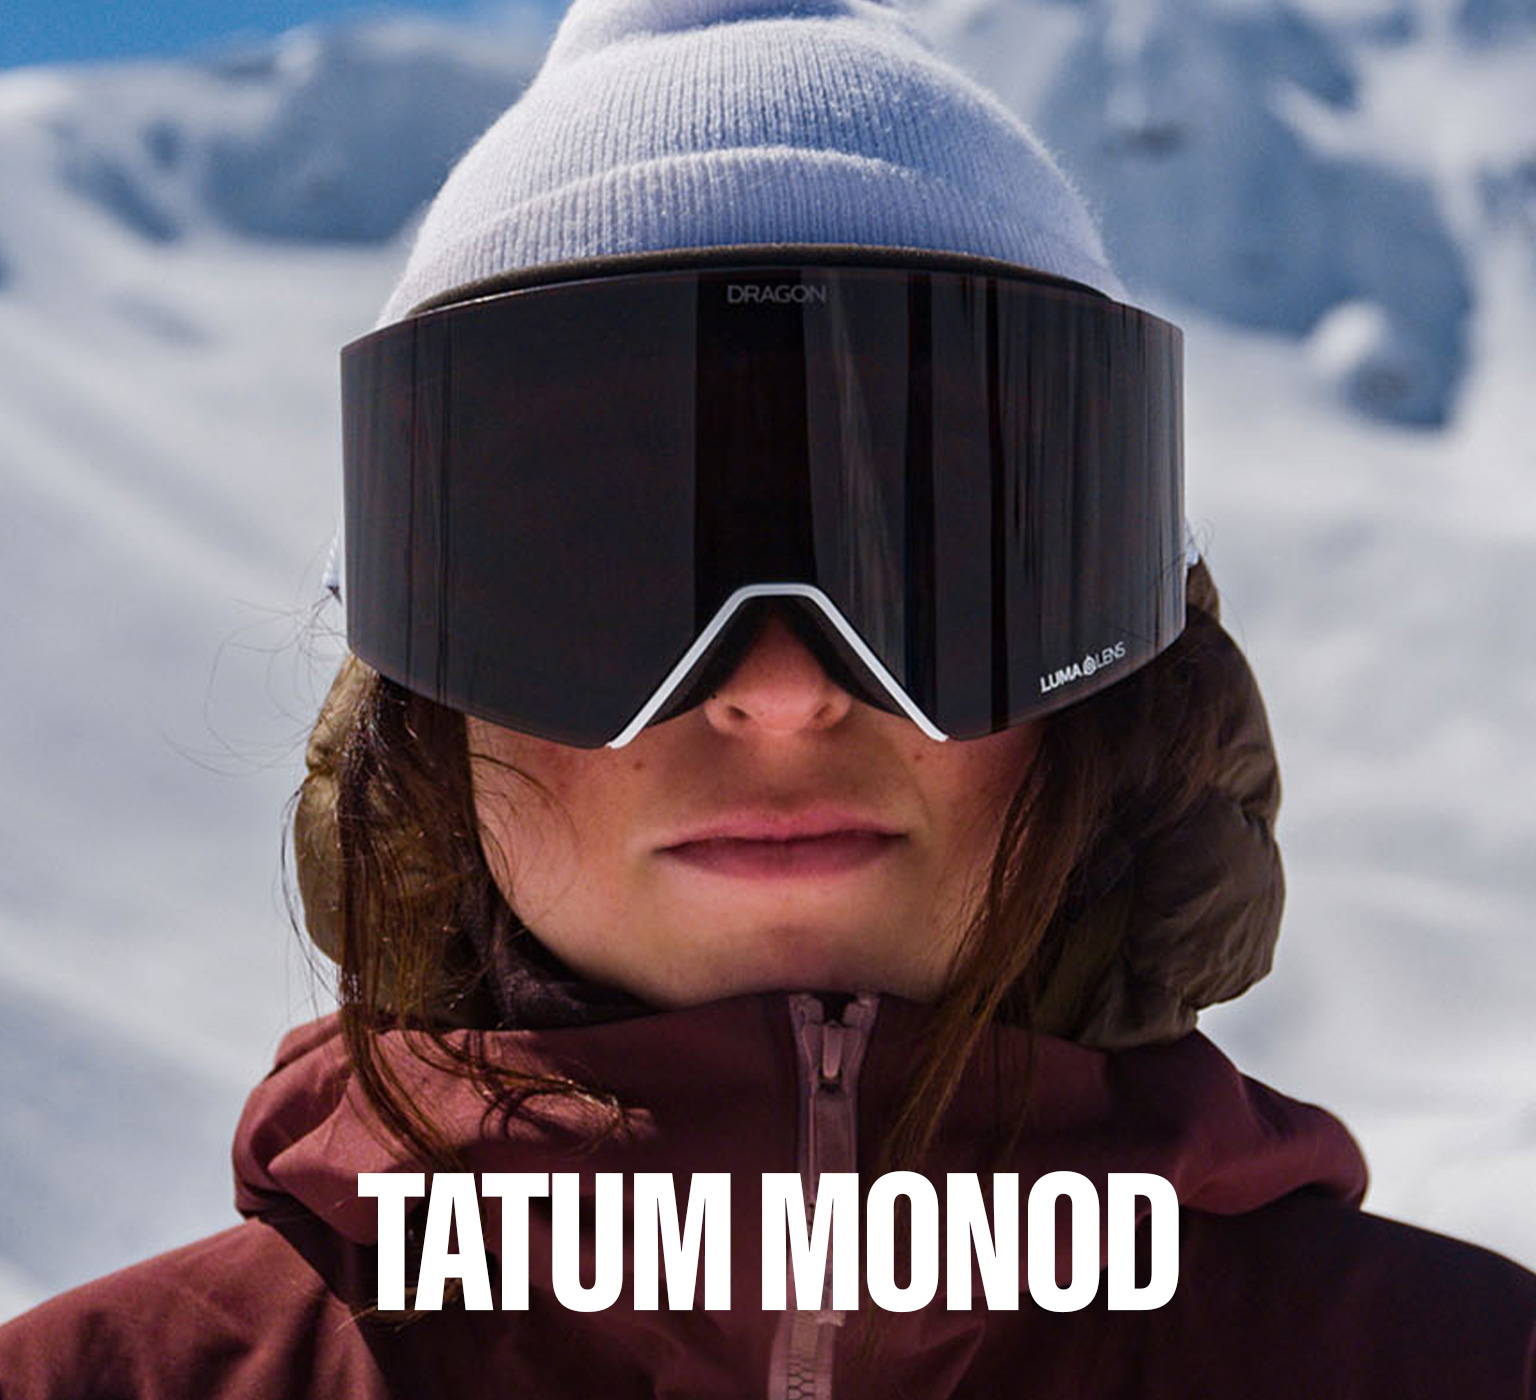 Tatum Monod